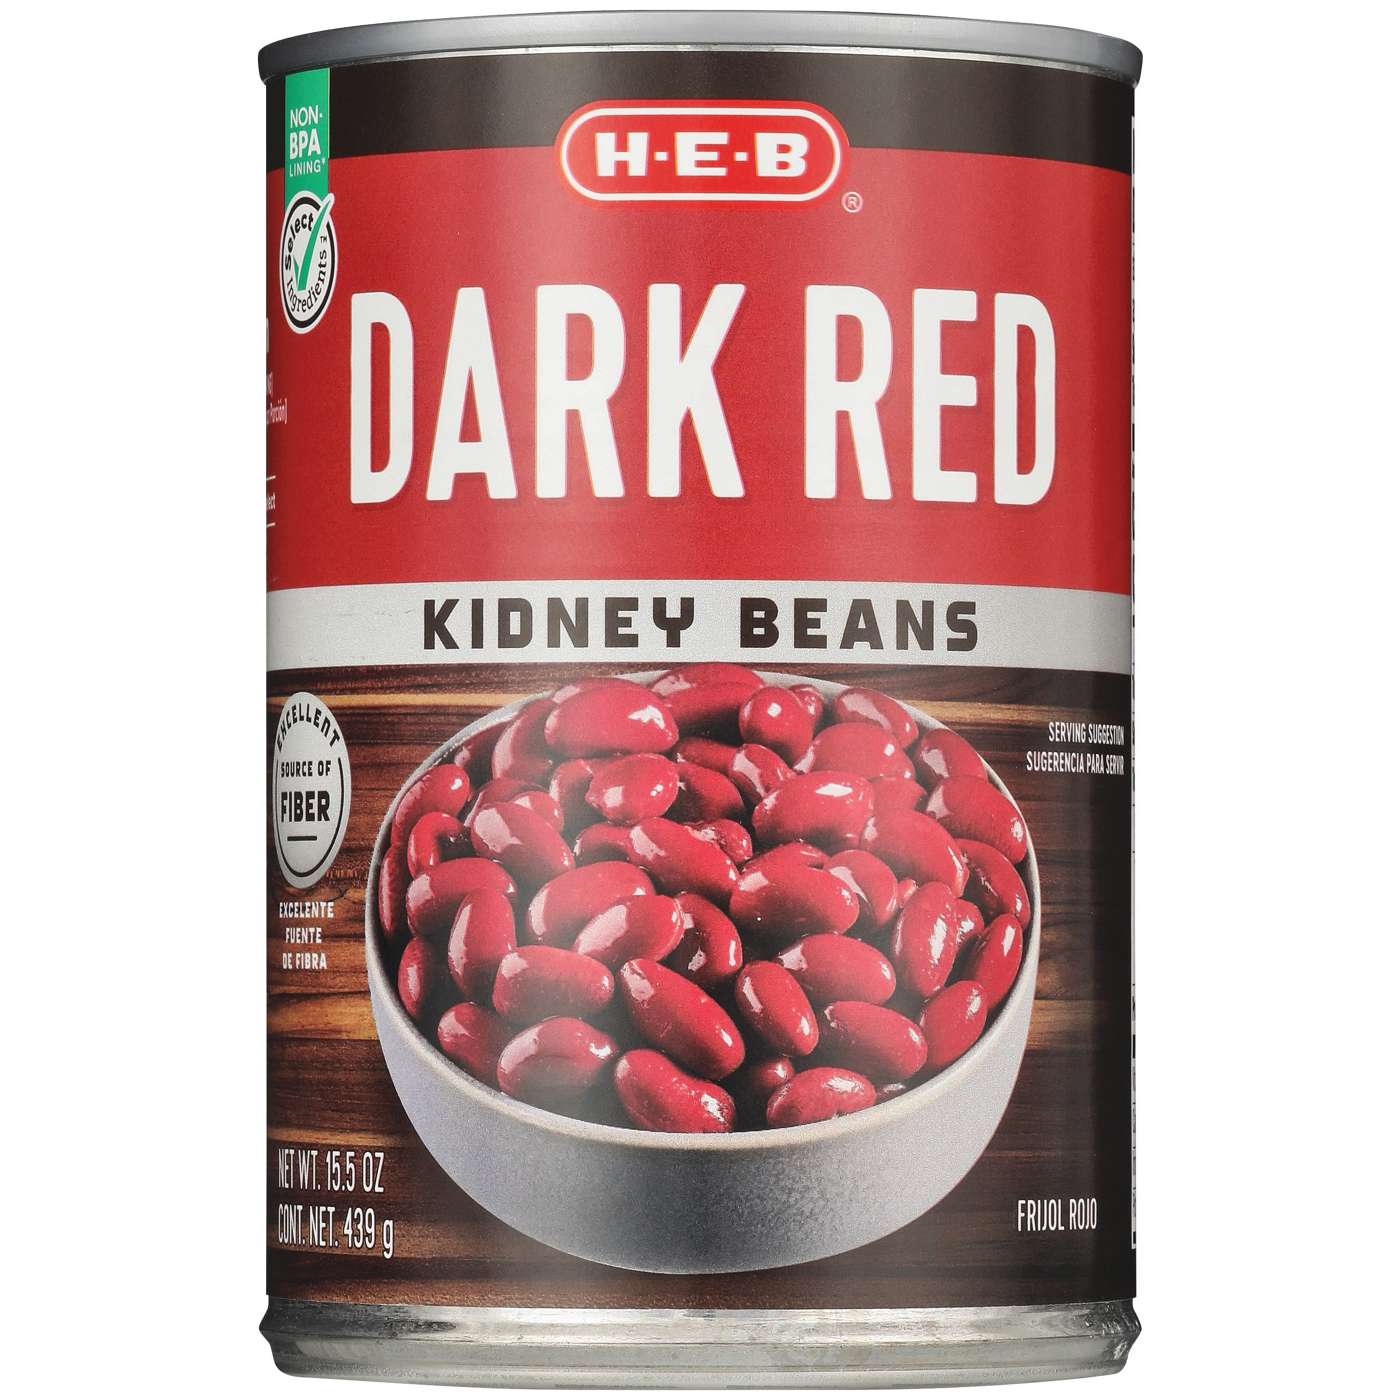 H-E-B Dark Red Kidney Beans; image 1 of 2